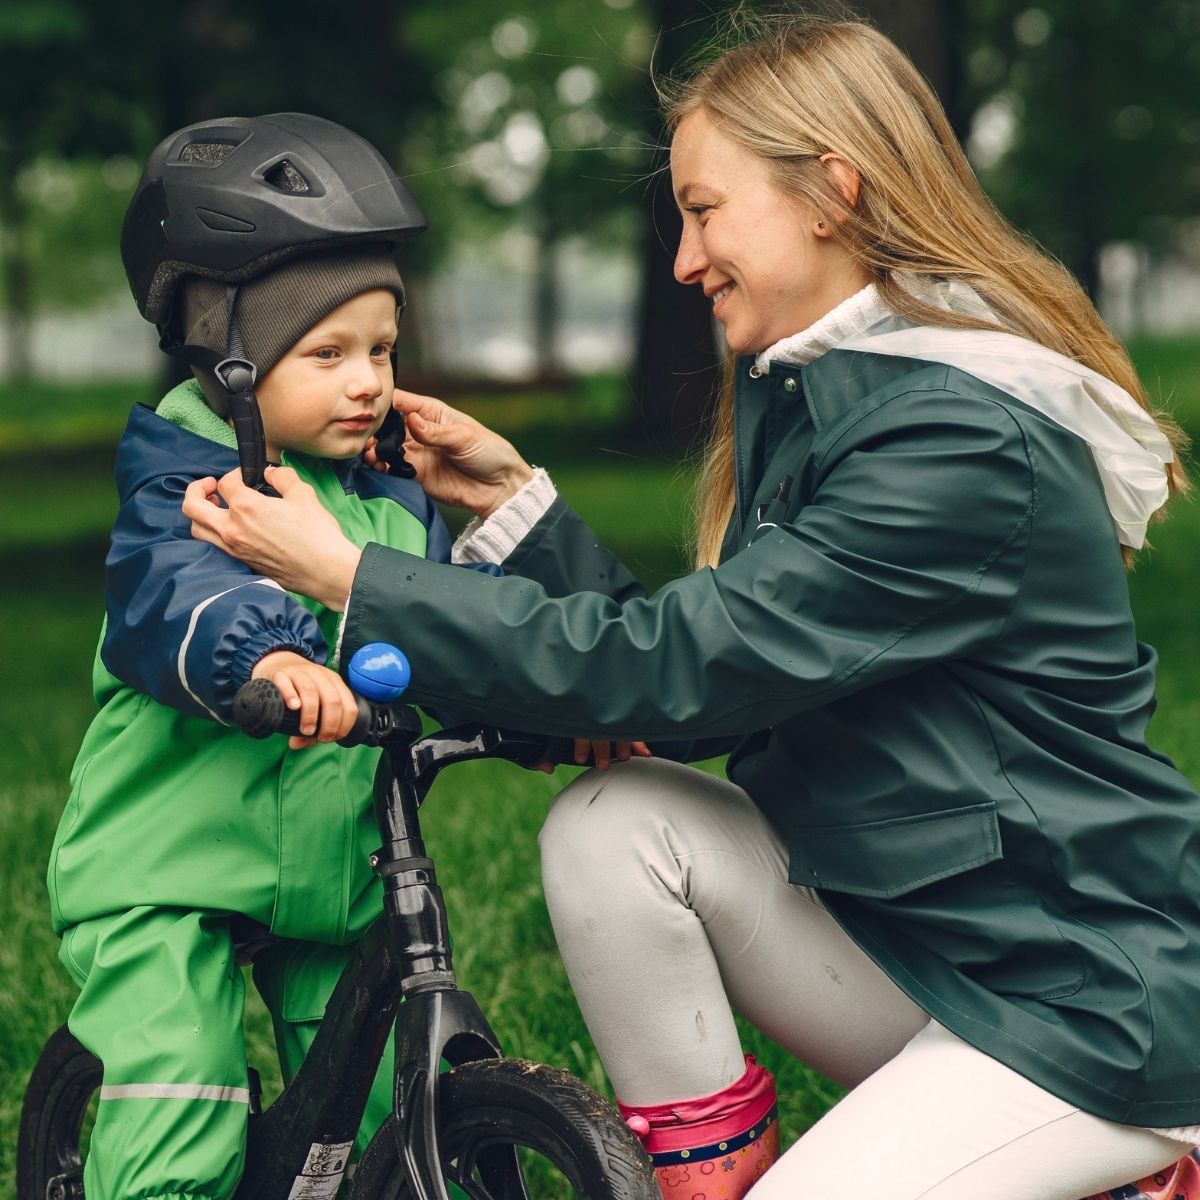 Claves para enseñar a un niño a montar en bici - Cicloescuela